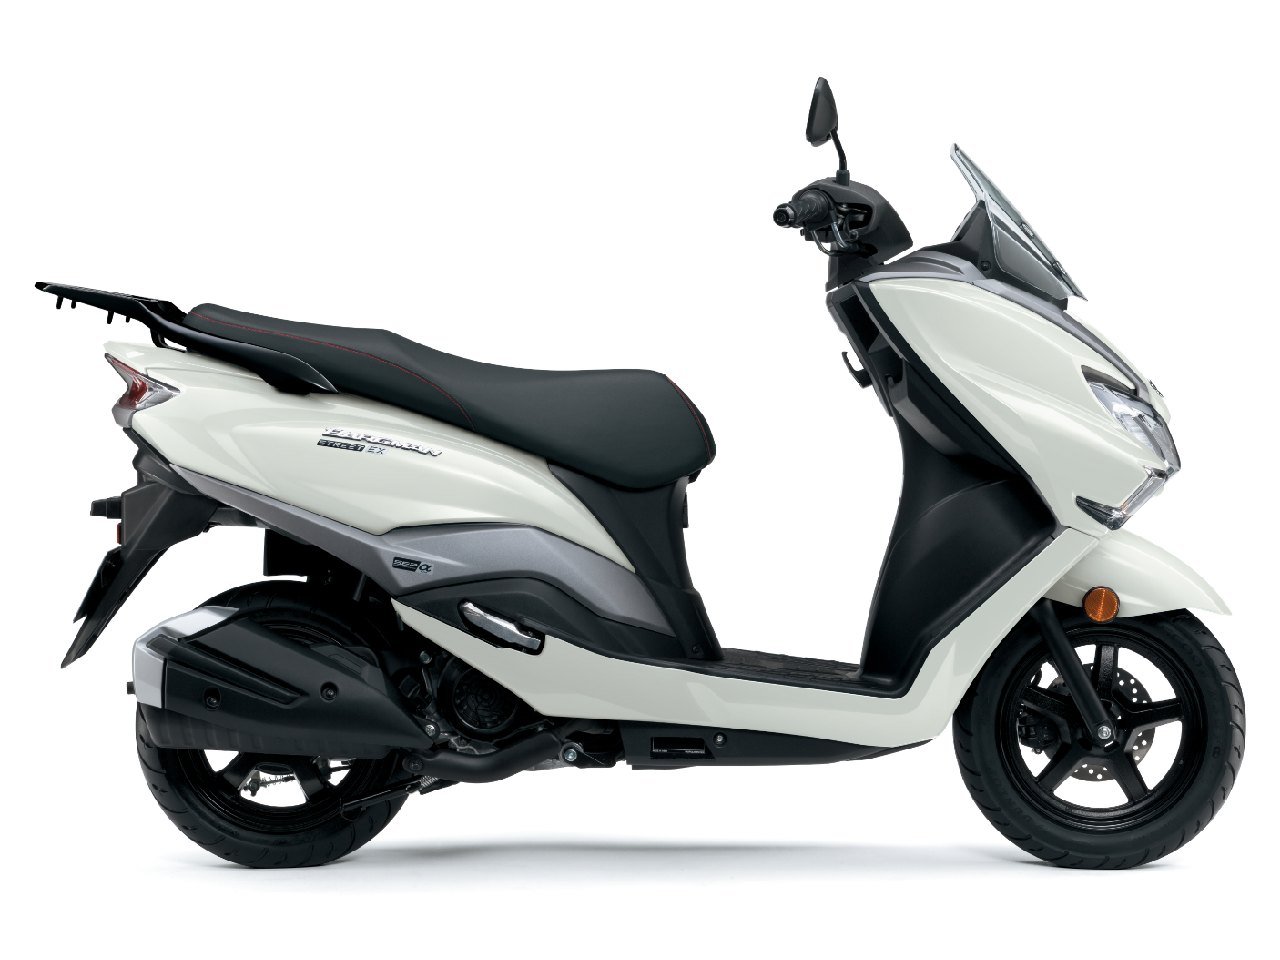 Suzuki revela novo scooter Burgman Street 125 EX